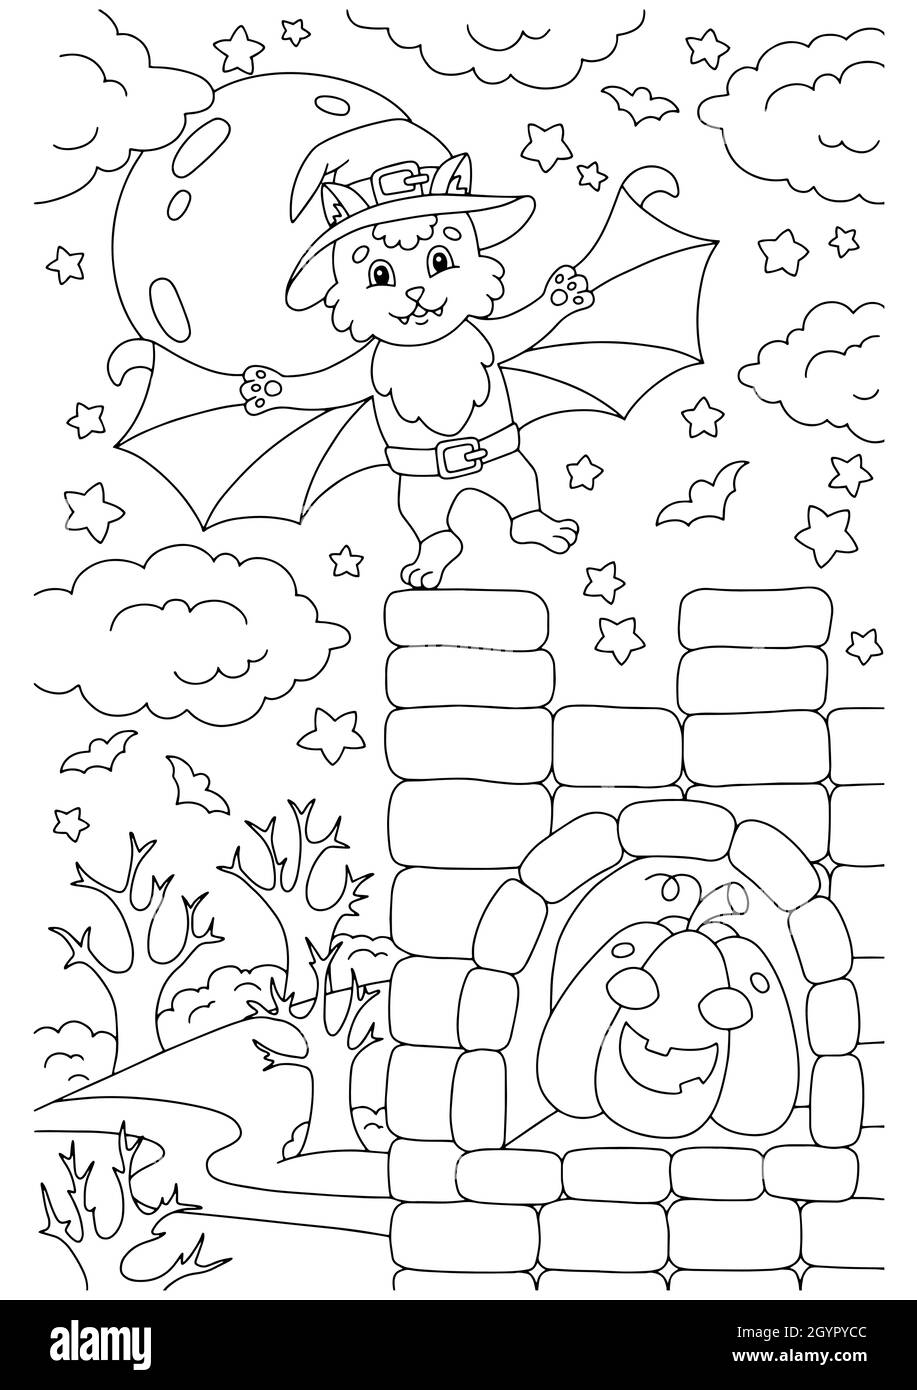 Une jolie chauve-souris s'est envolée dans le château.Page de livre de coloriage pour les enfants.Personnage de style dessin animé.Illustration vectorielle isolée sur fond blanc. Illustration de Vecteur